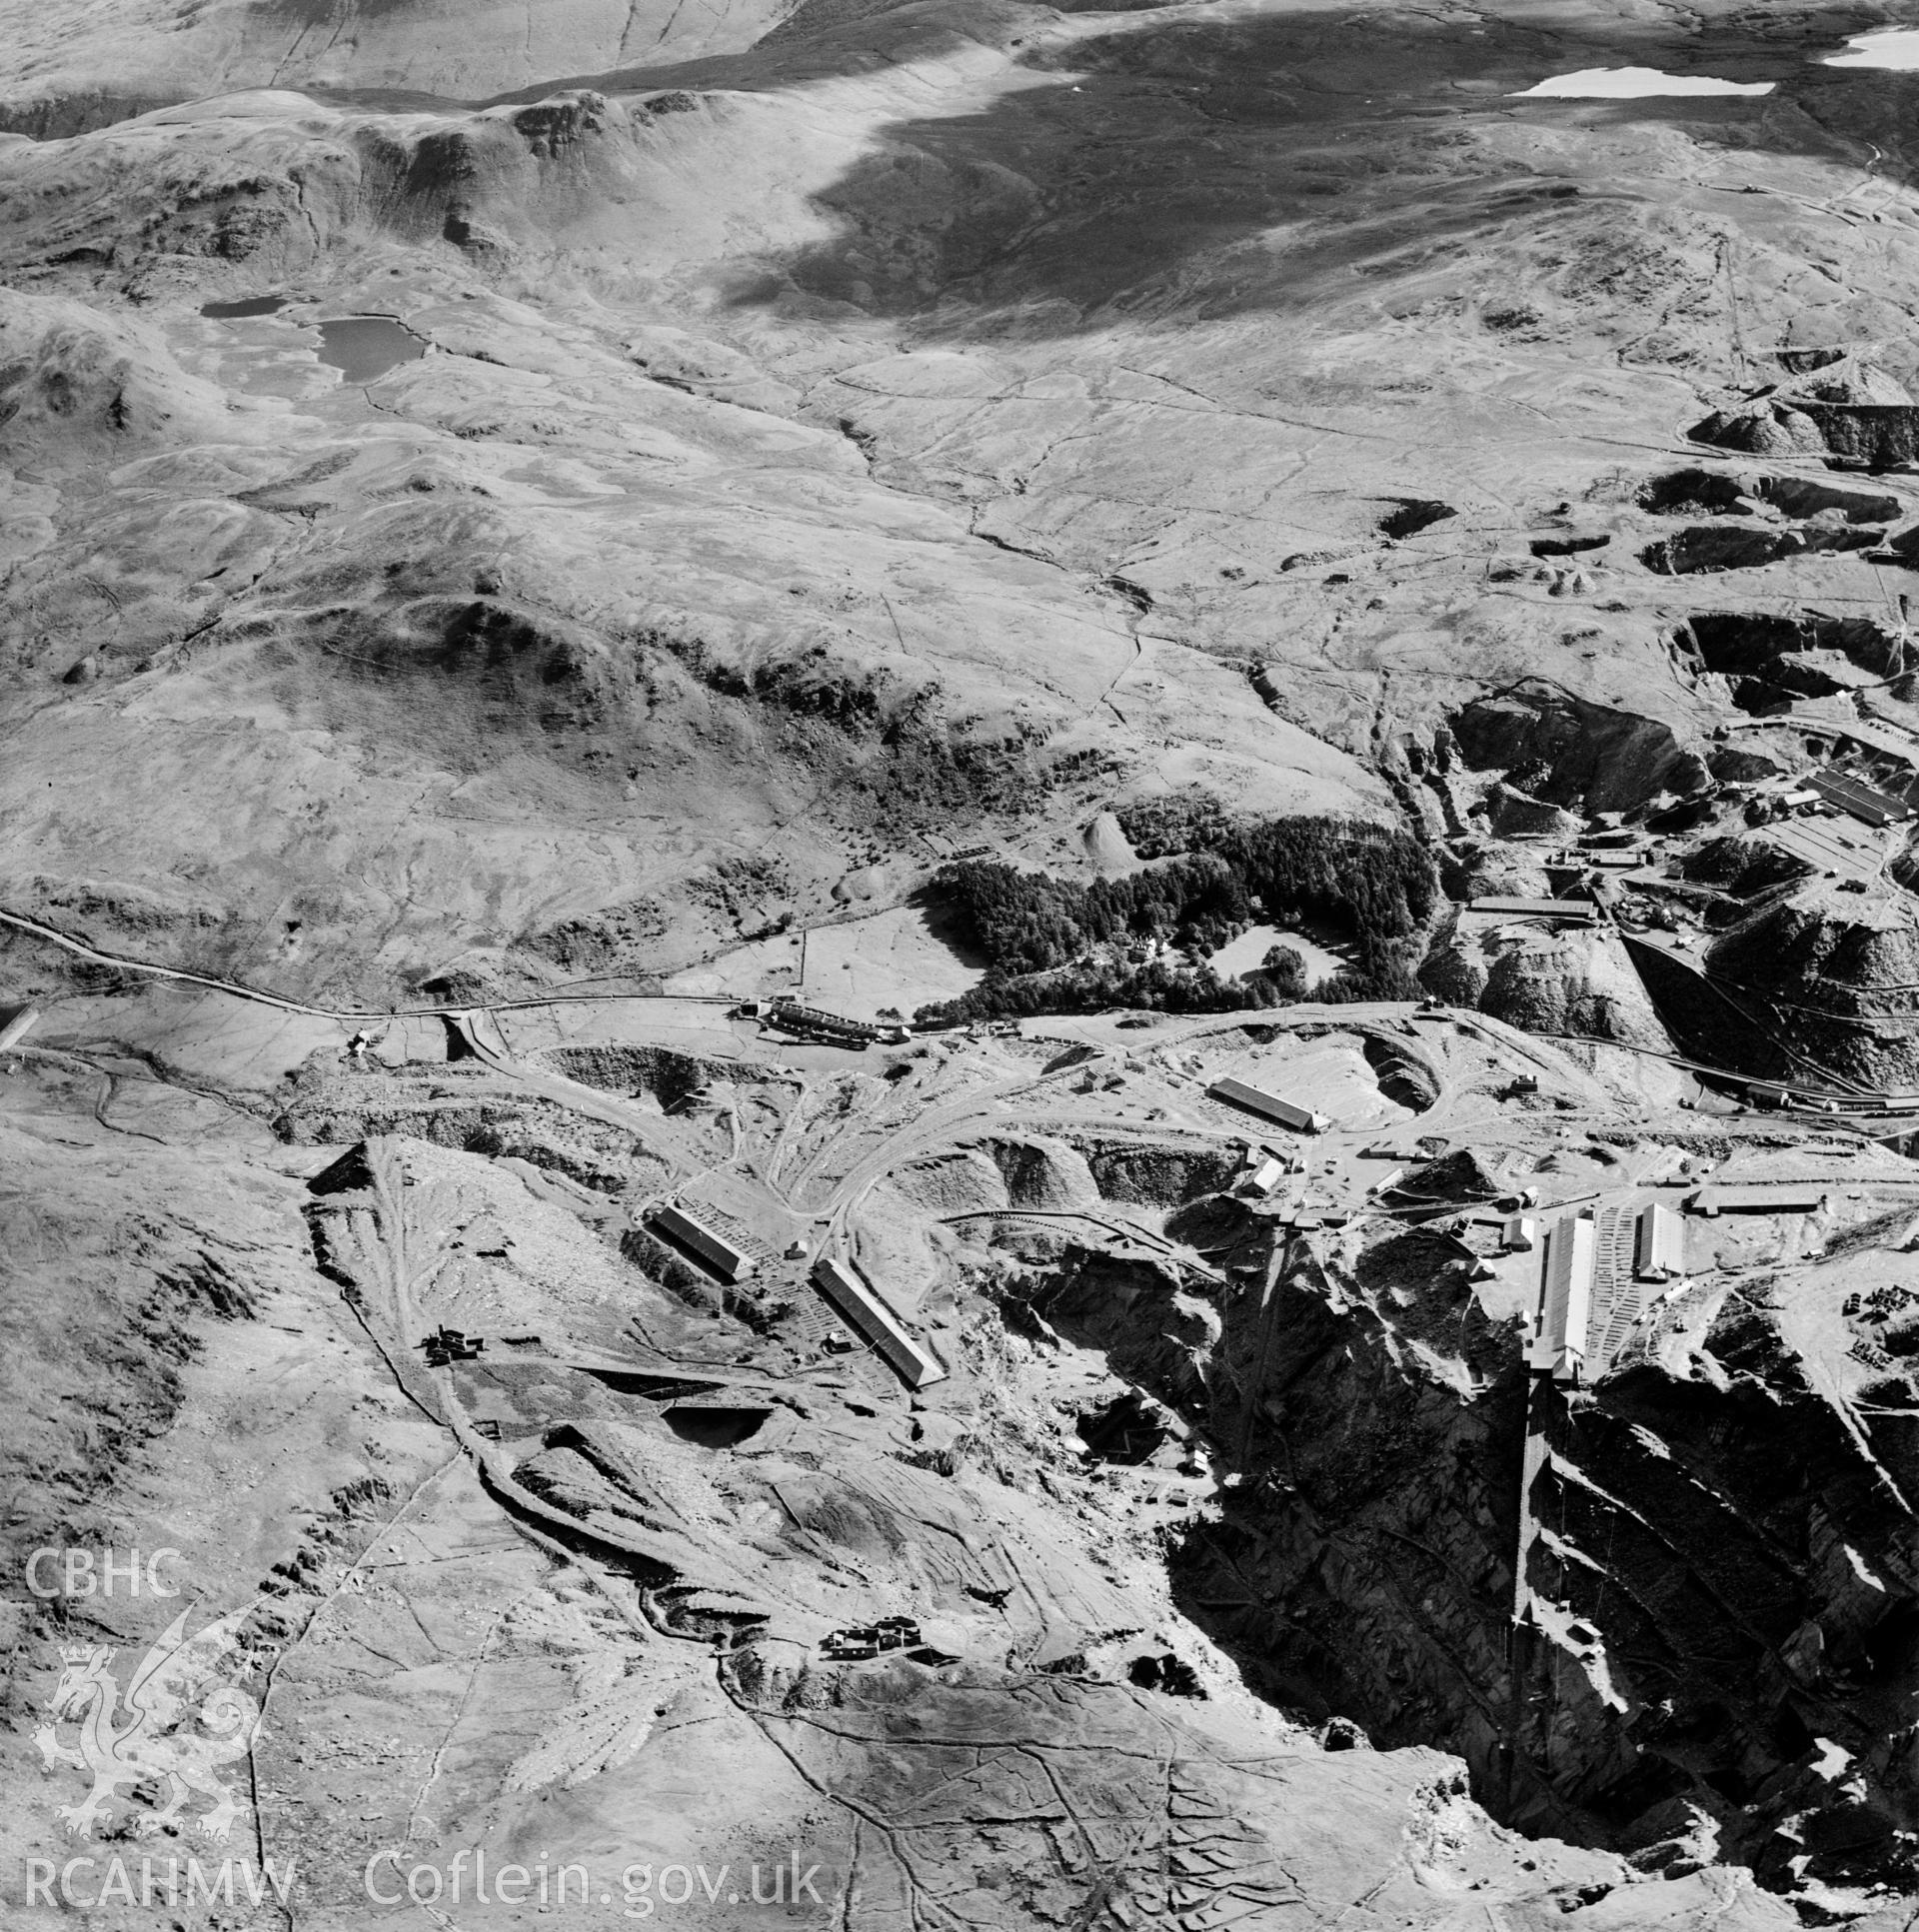 View of Madoc quarry, Blaenau Ffestiniog, commissioned by Cawood Wharton & Co. Ltd.